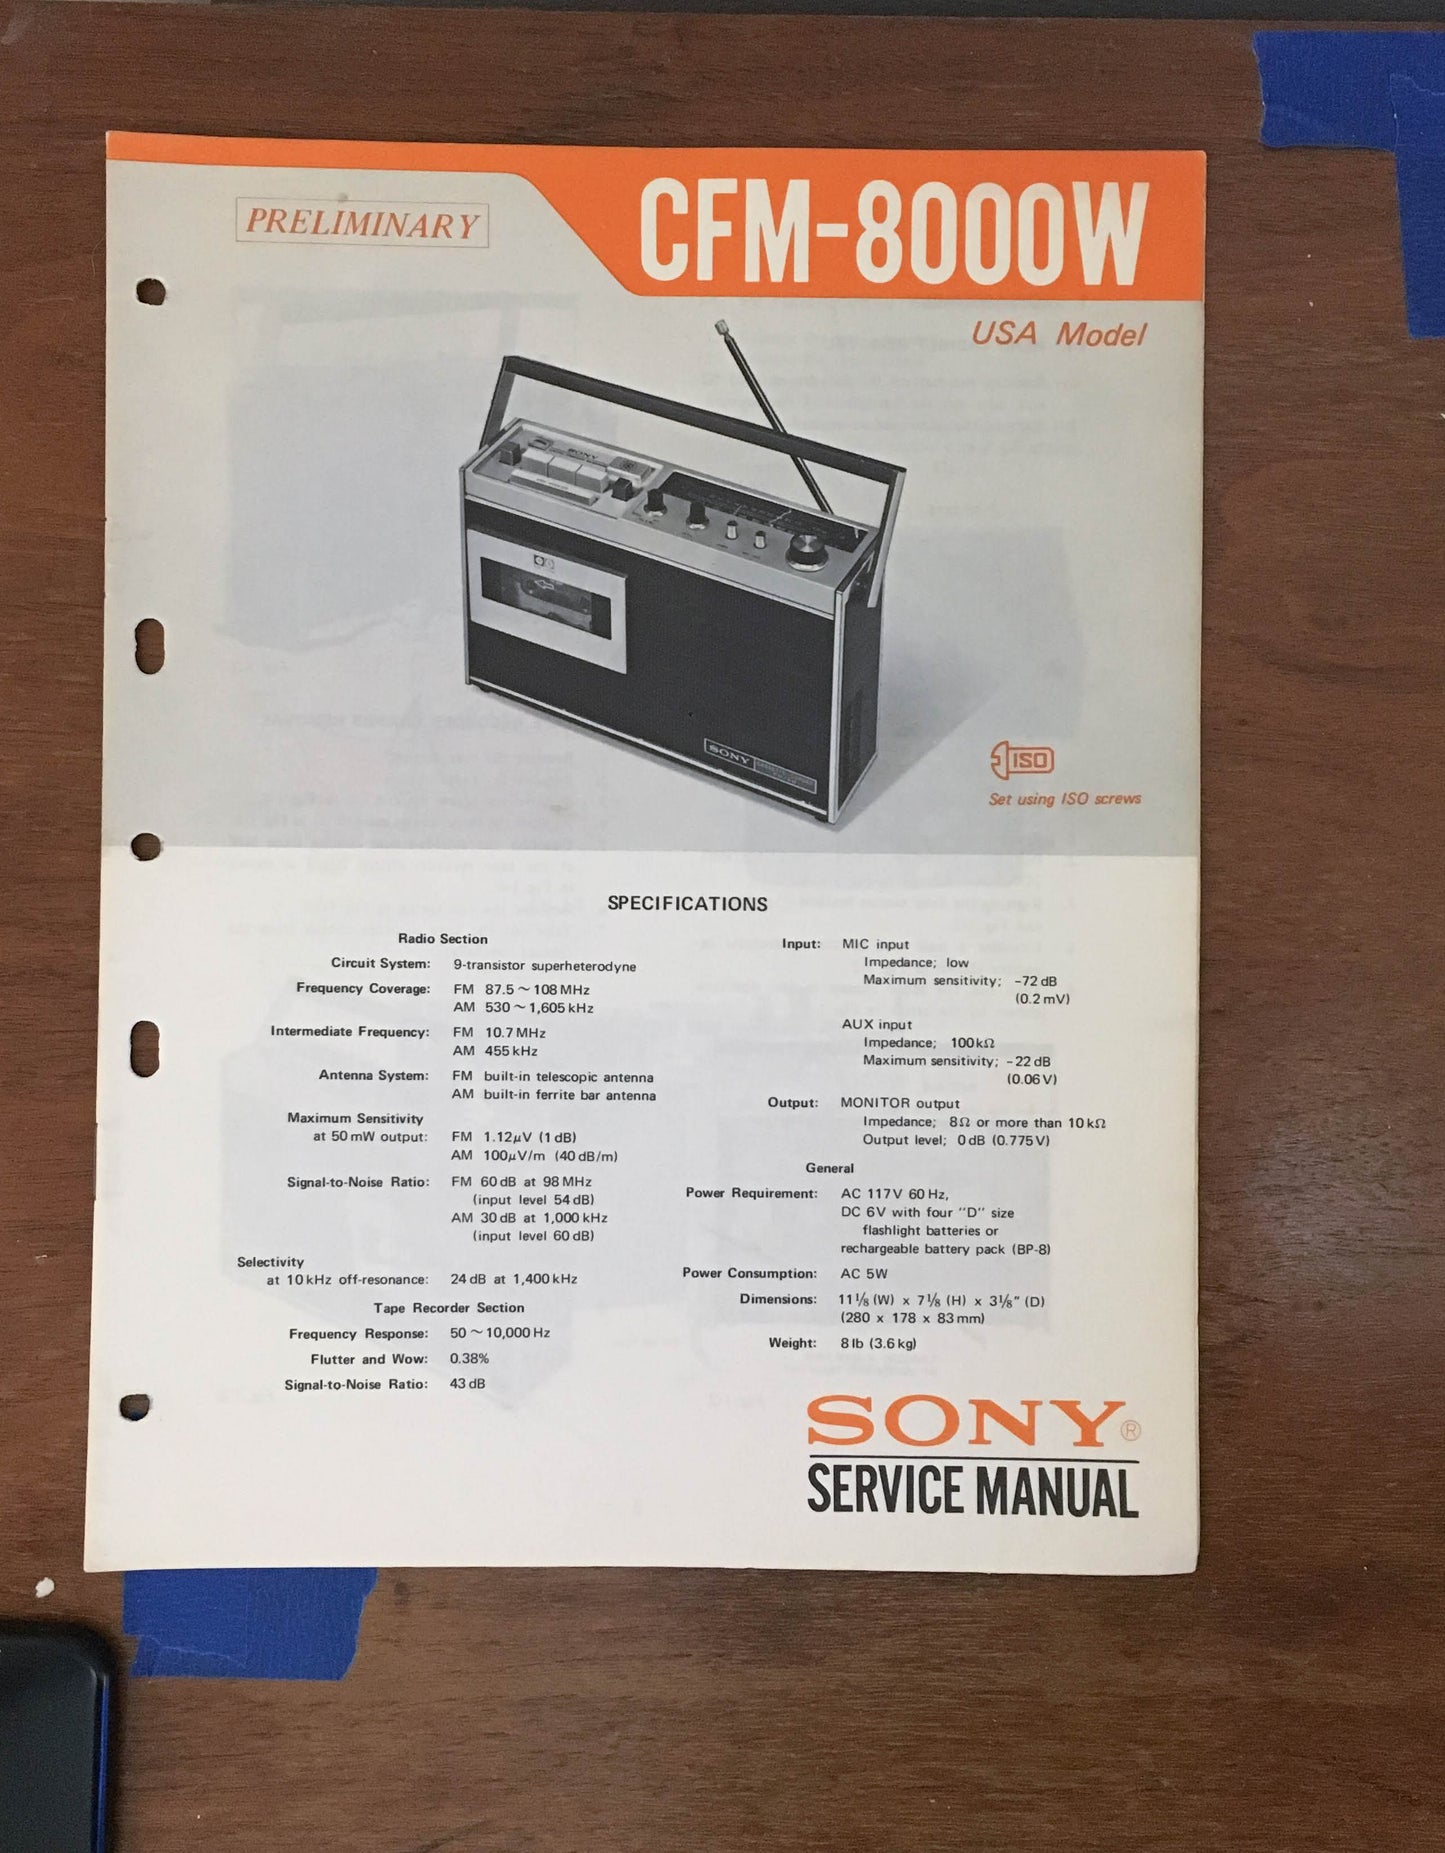 Sony CFM-8000W Radio Cassette Recorder Preliminary Service Manual *Original*